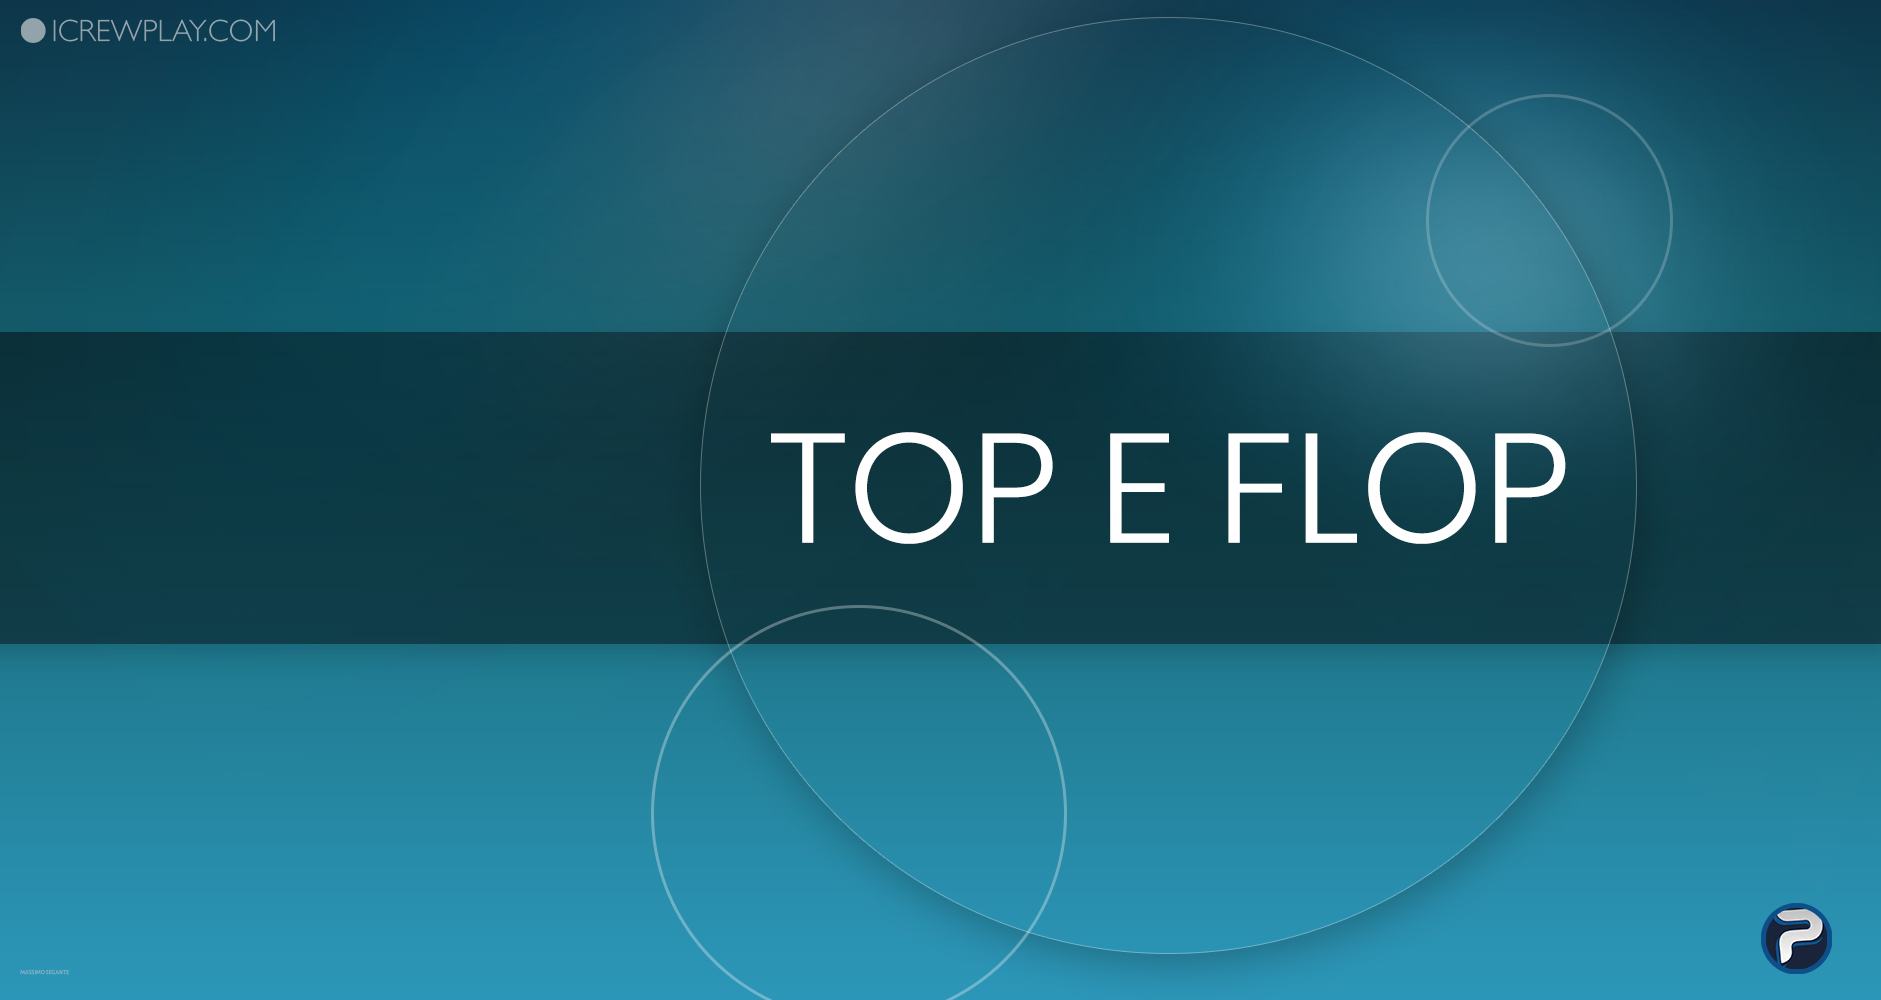 I "top" e i "flop" della settimana videoludica: 16 luglio - 22 luglio 4